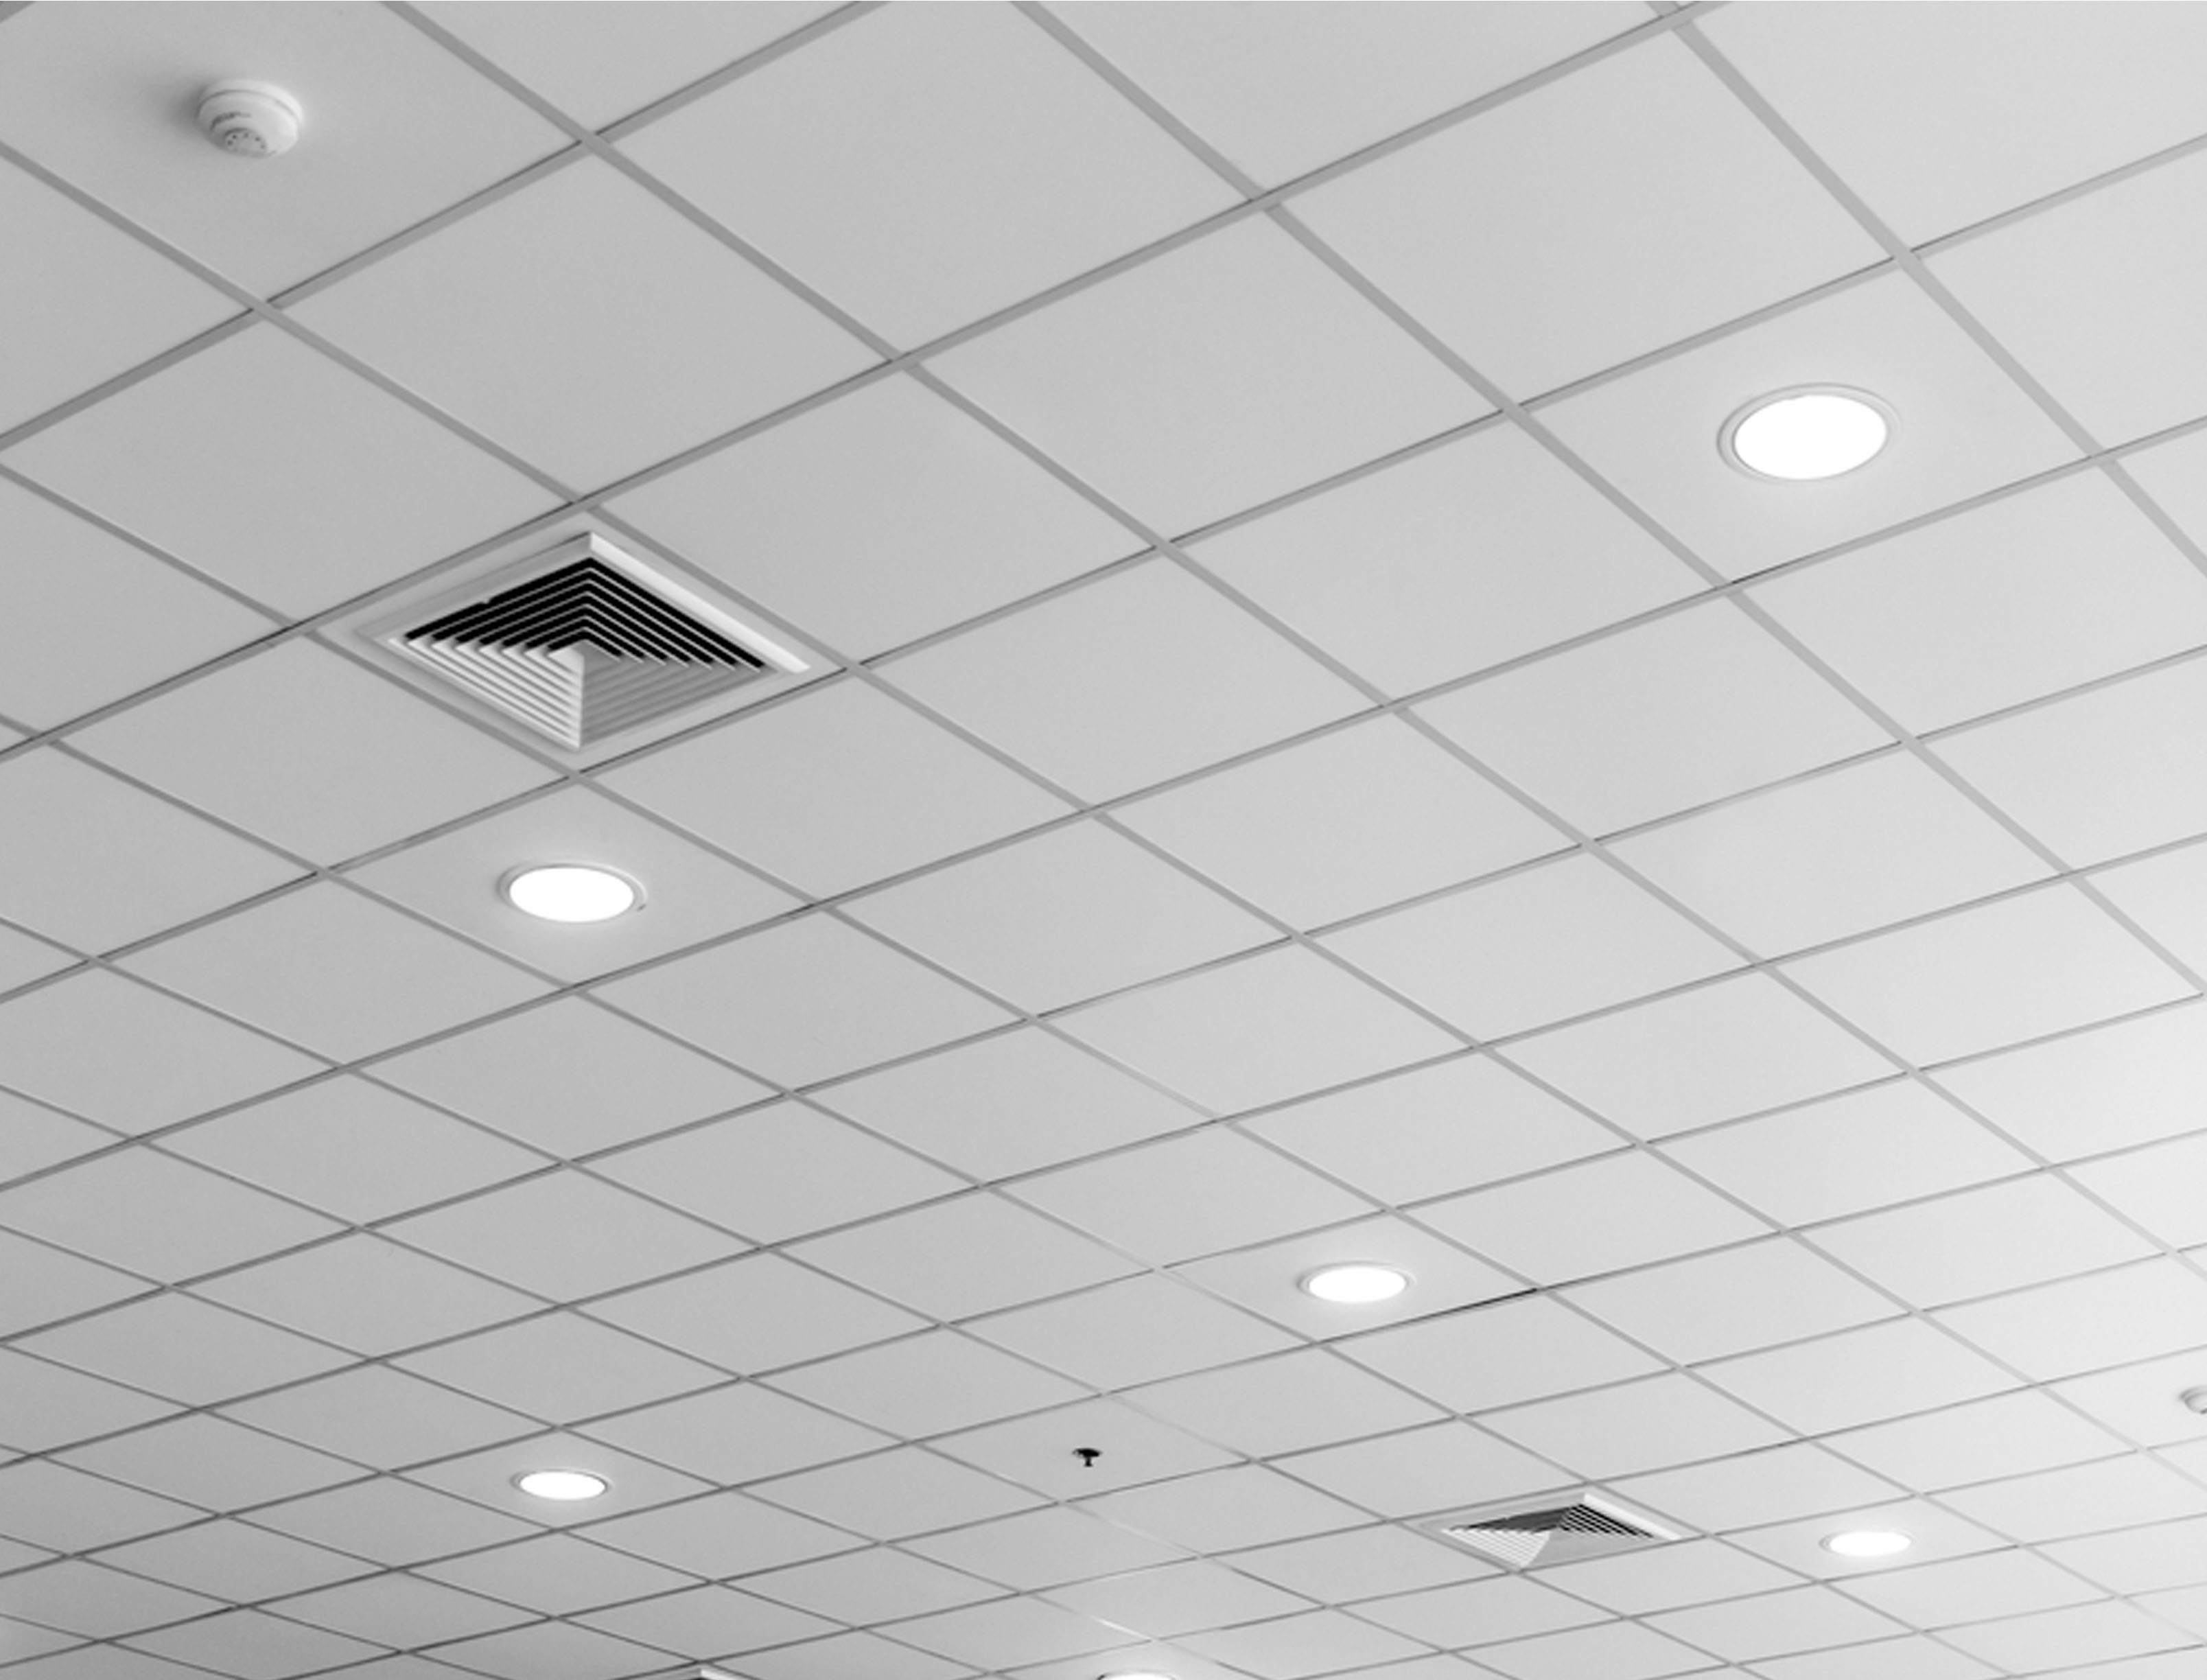 Ceiling Tiles Grid Size Ceiling Tiles Grid Size ceiling tile grid system ceiling tiles 3216 X 2448